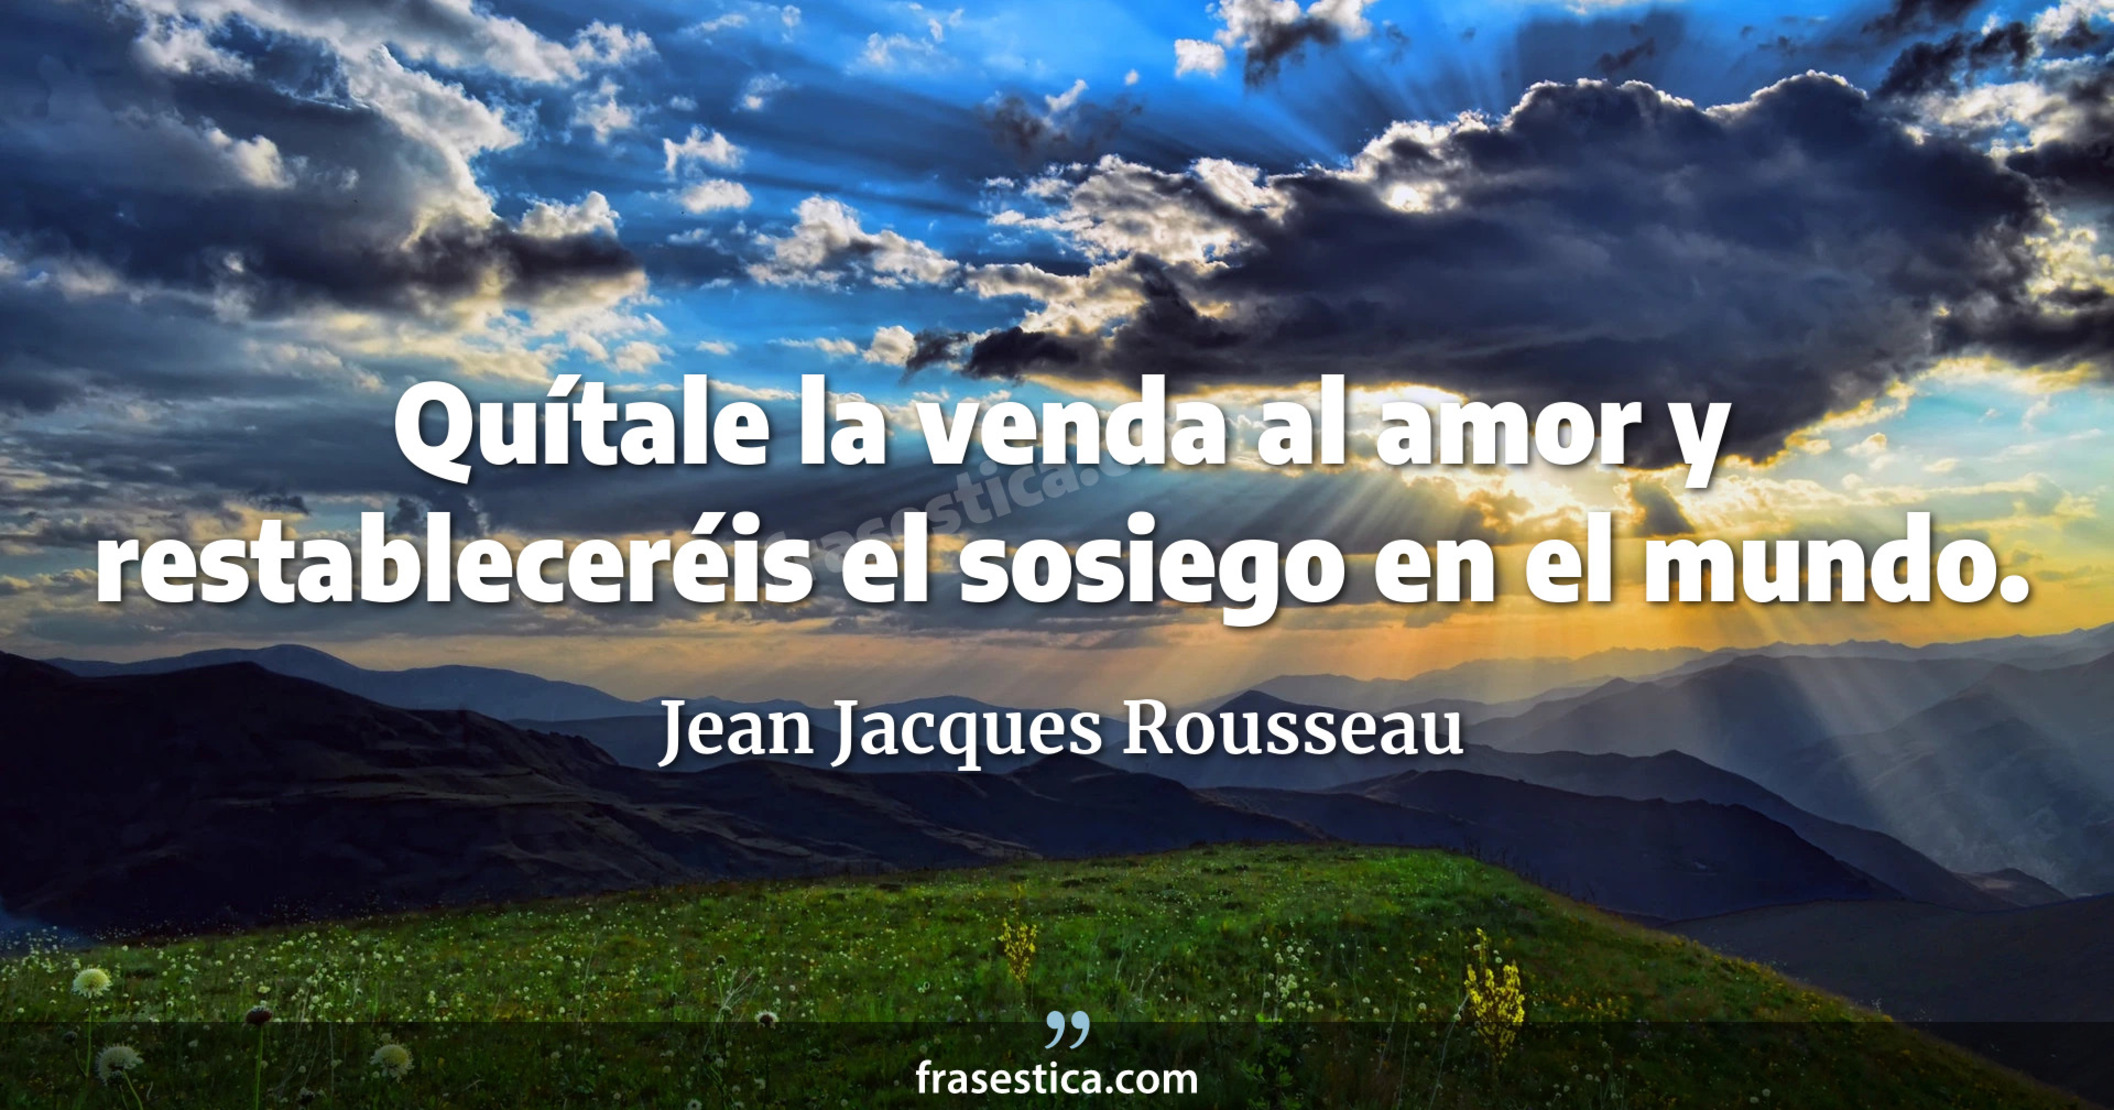 Quítale la venda al amor y restableceréis el sosiego en el mundo. - Jean Jacques Rousseau